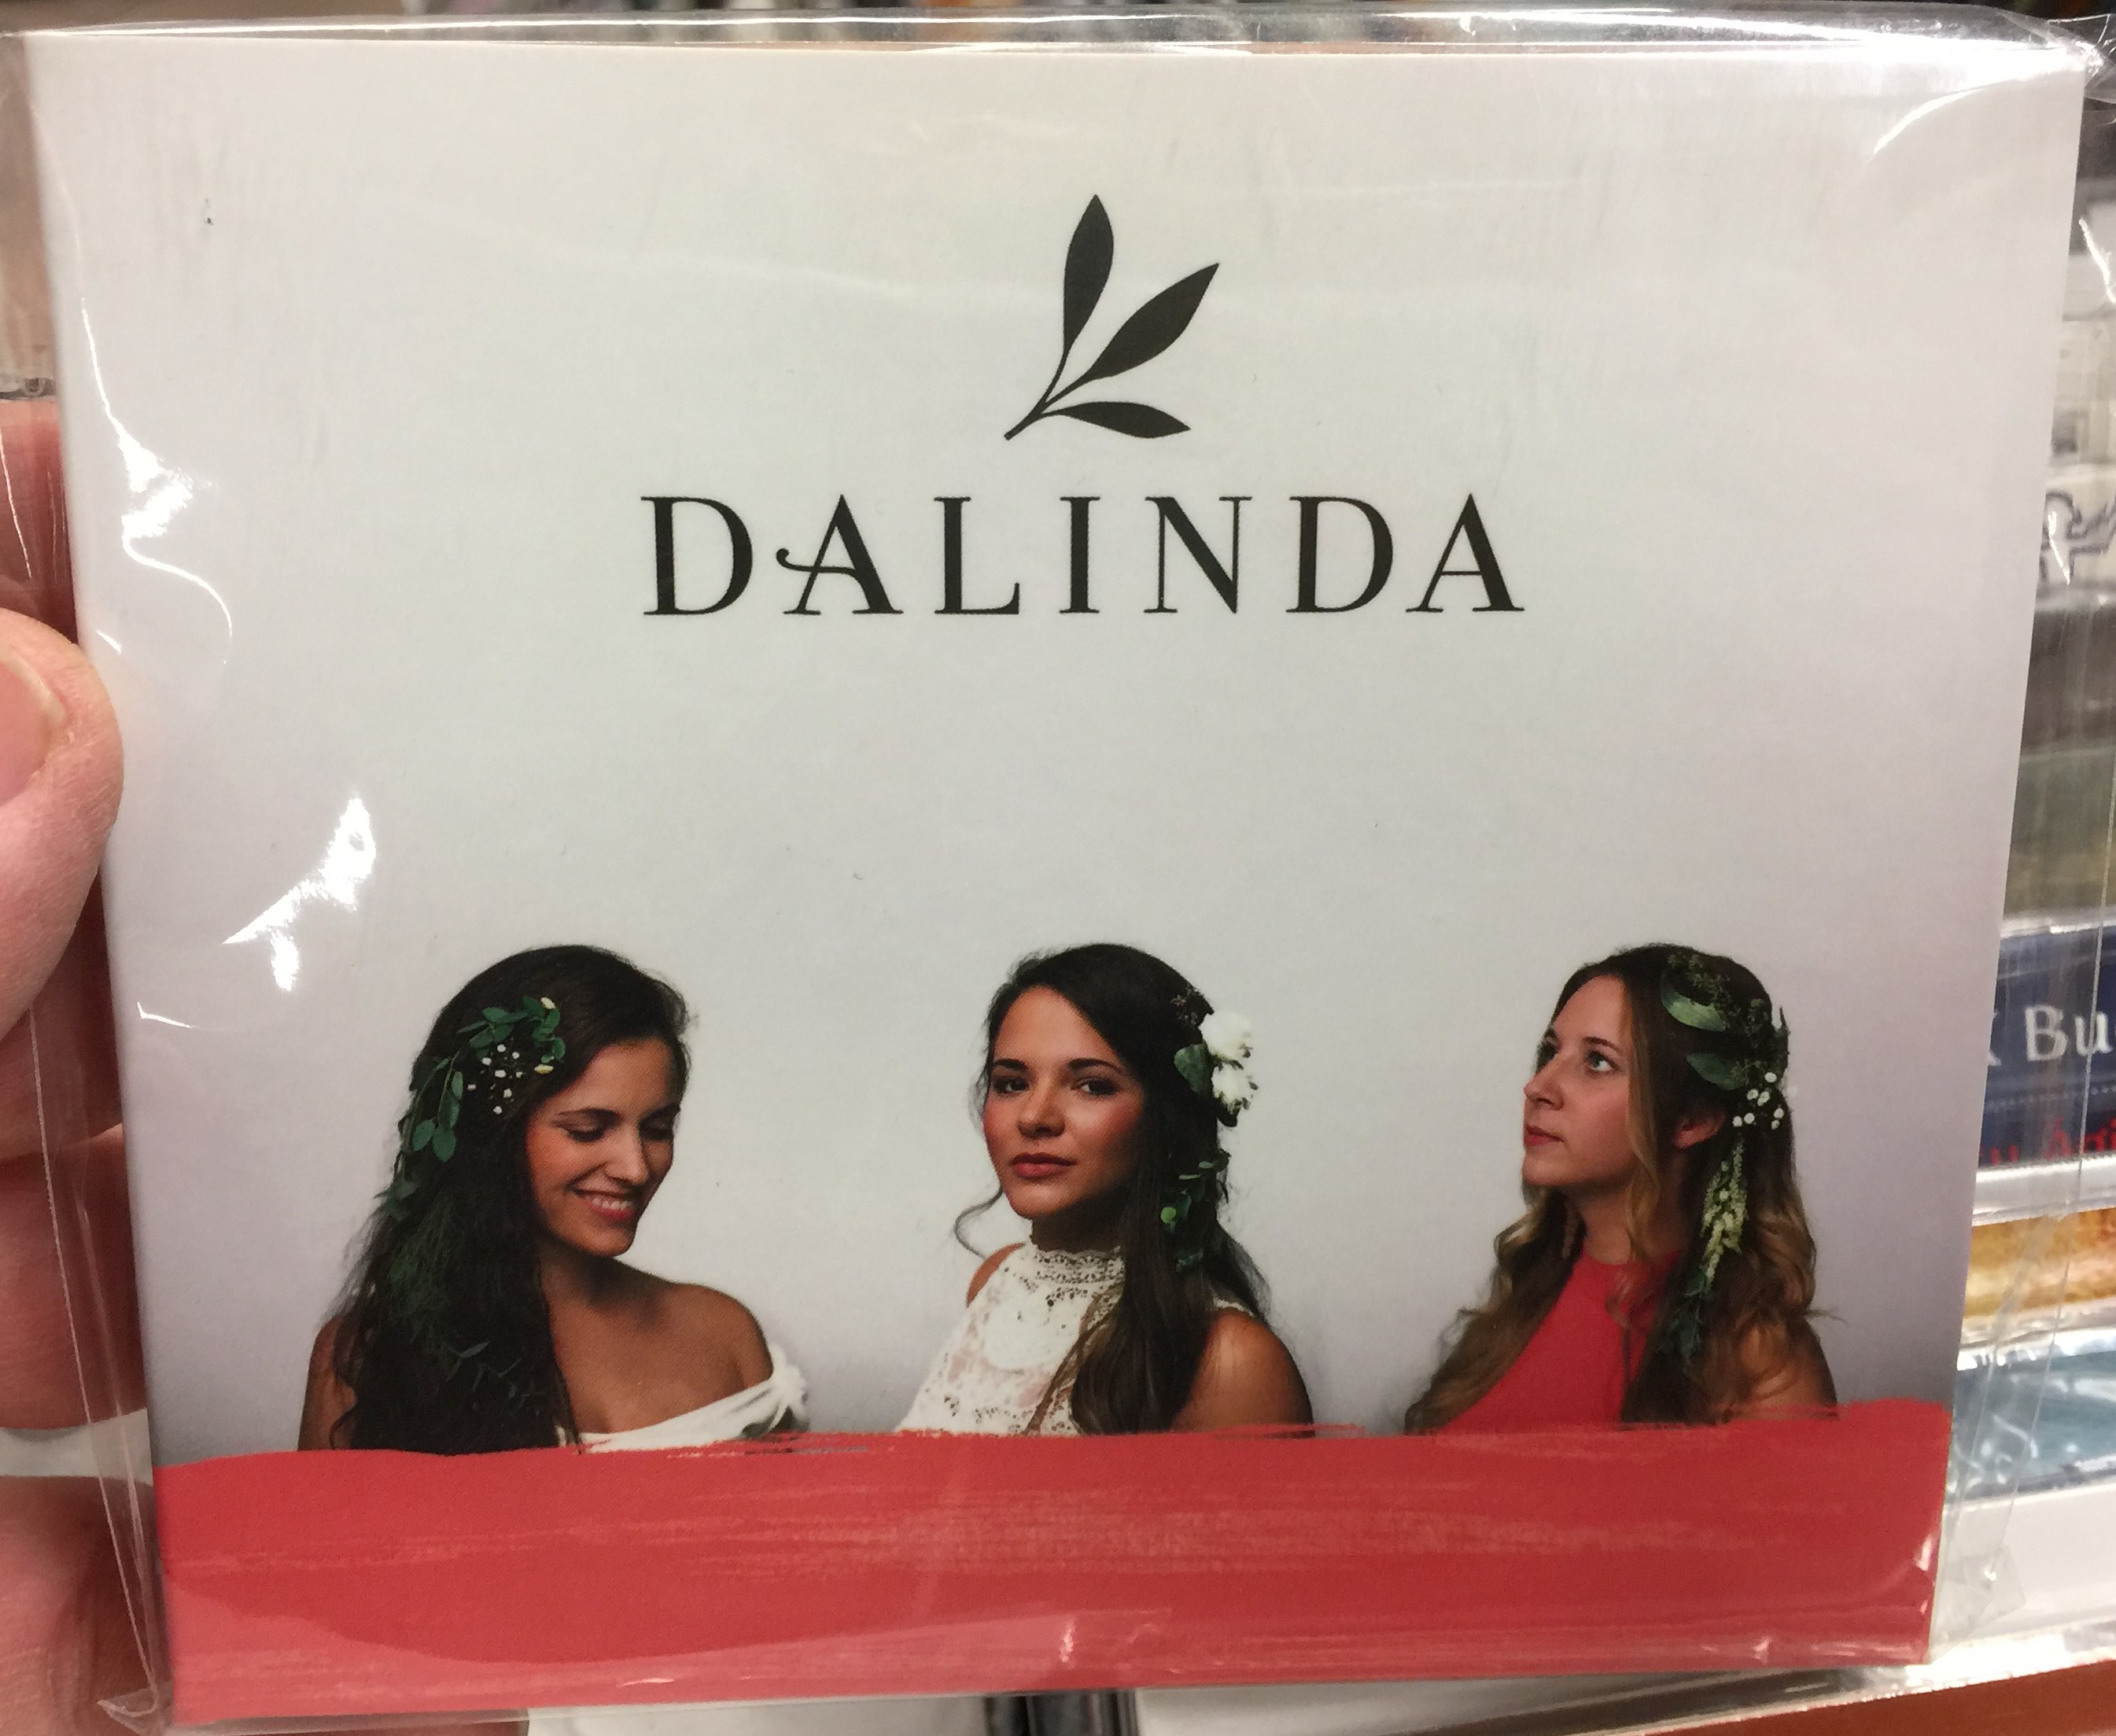 dalinda-fon-records-audio-cd-2018-fa-409-2-1-.jpg